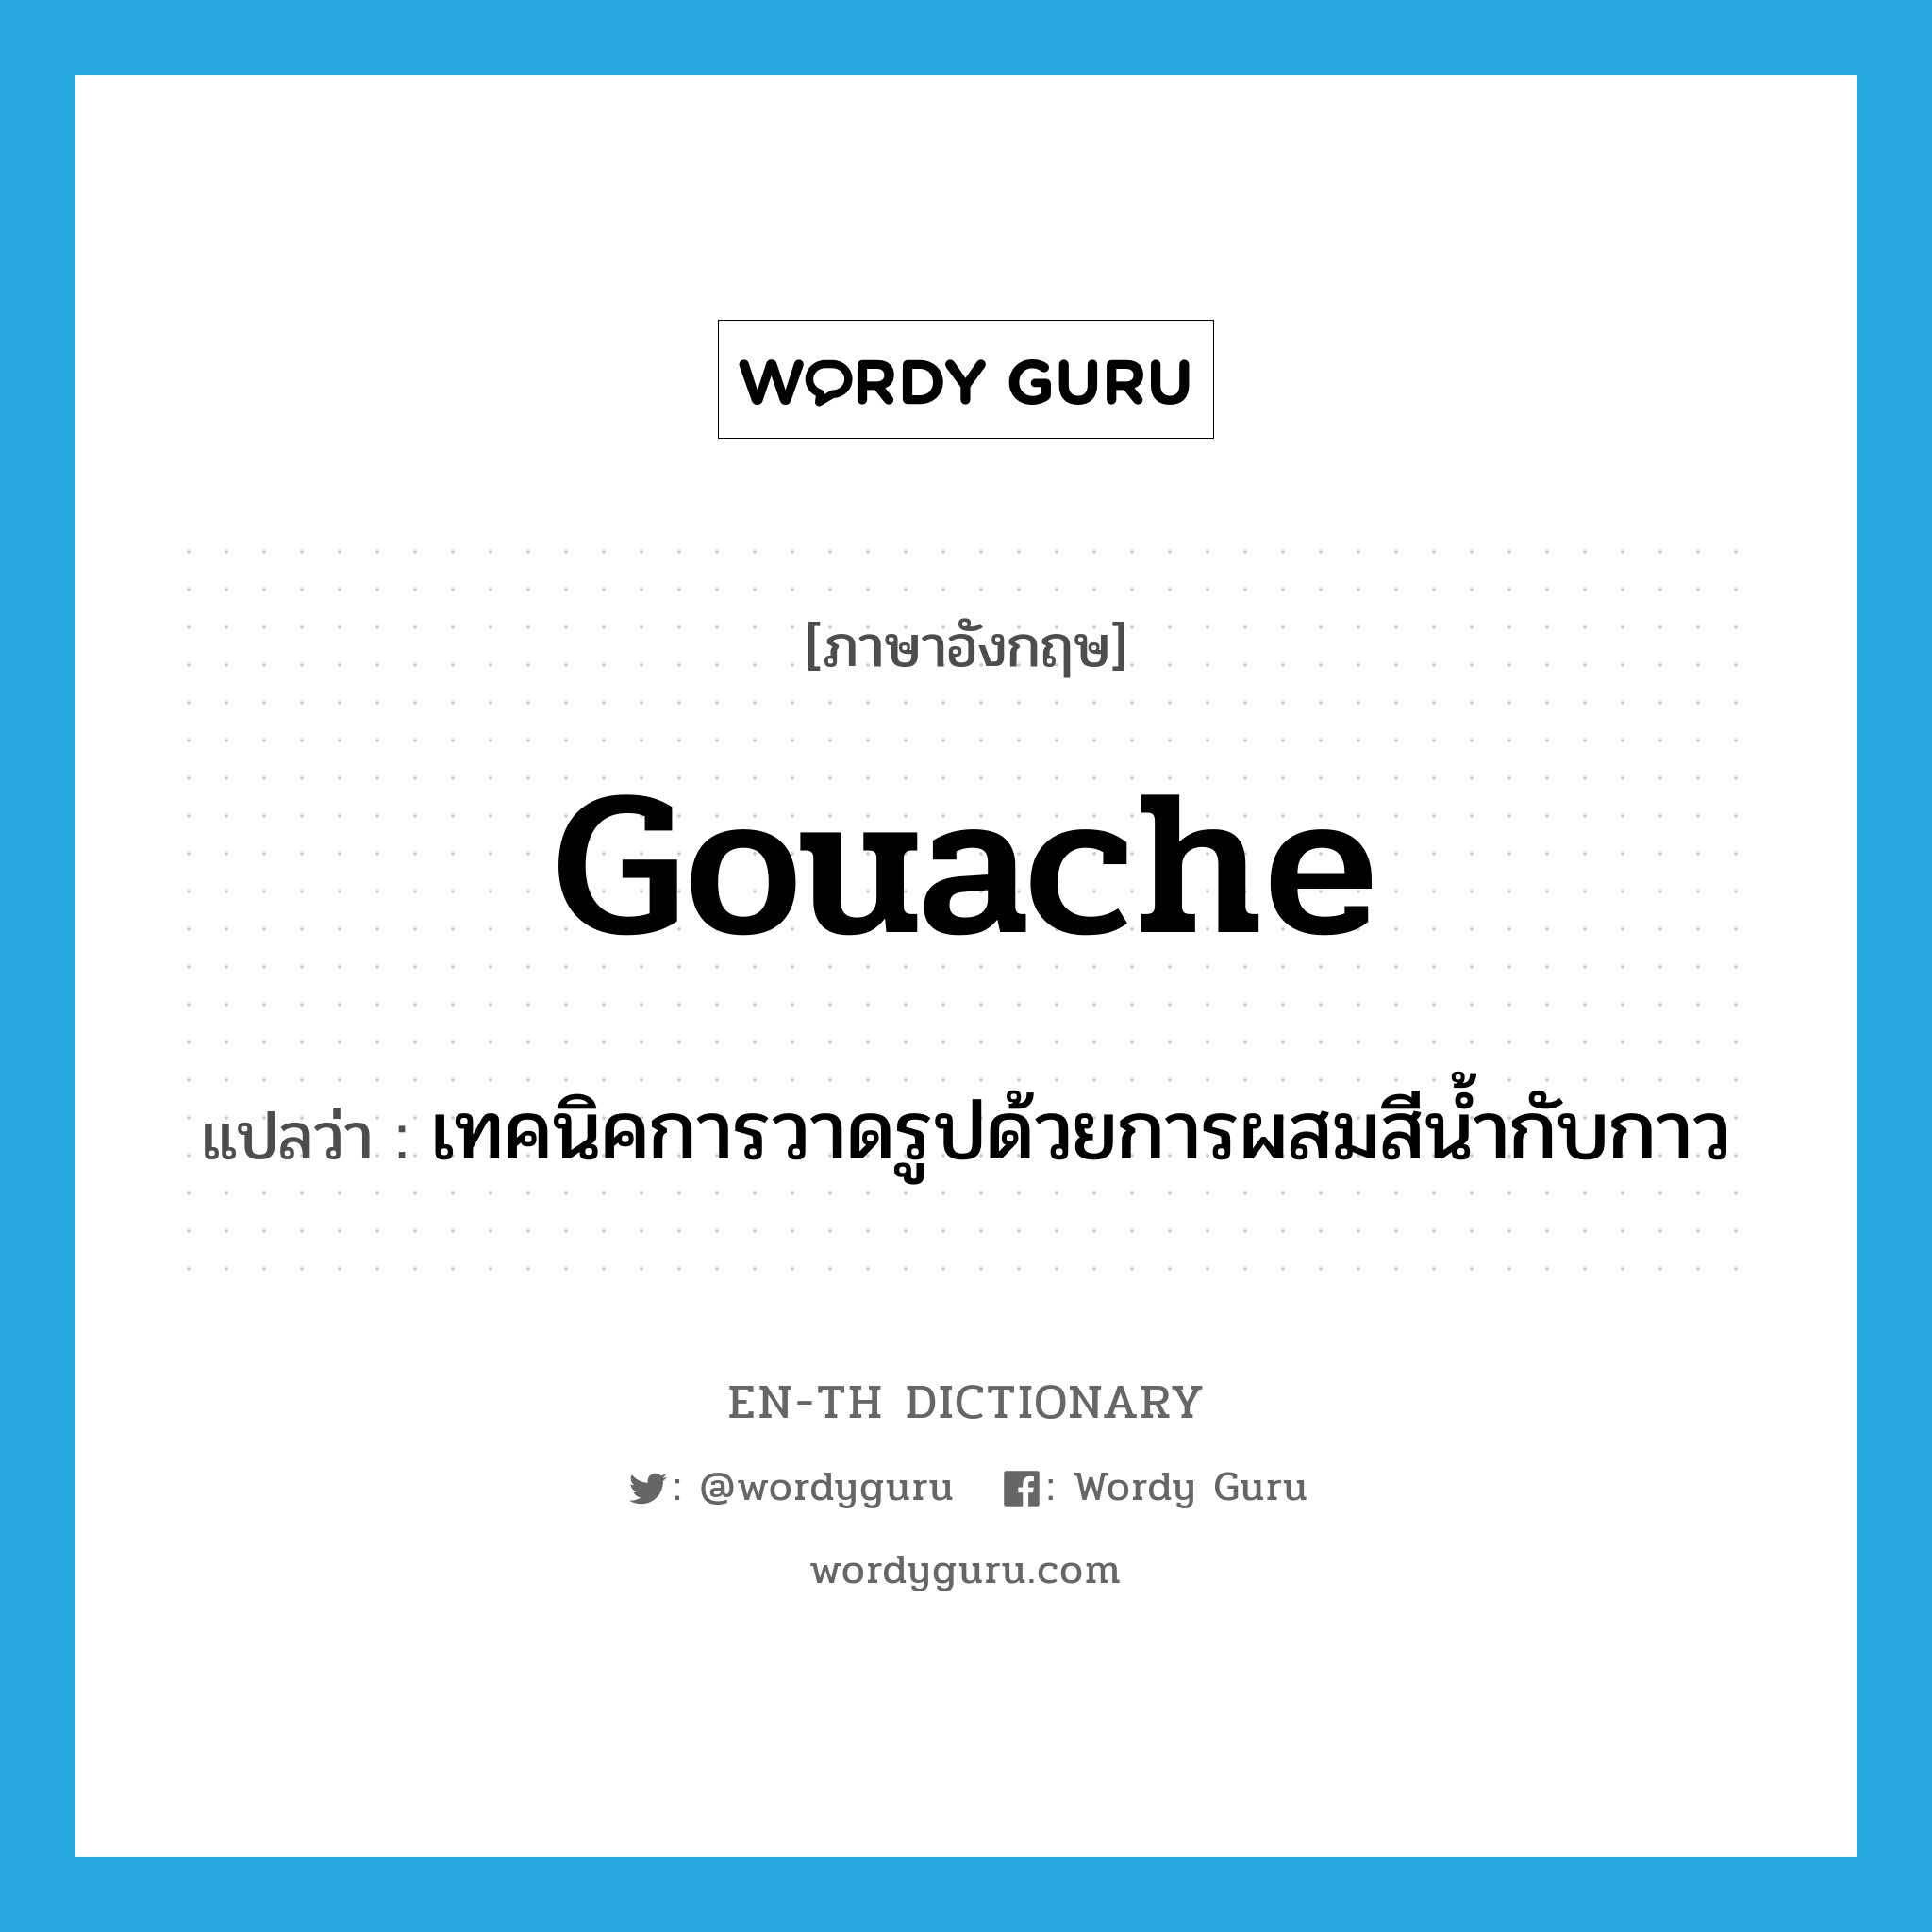 gouache